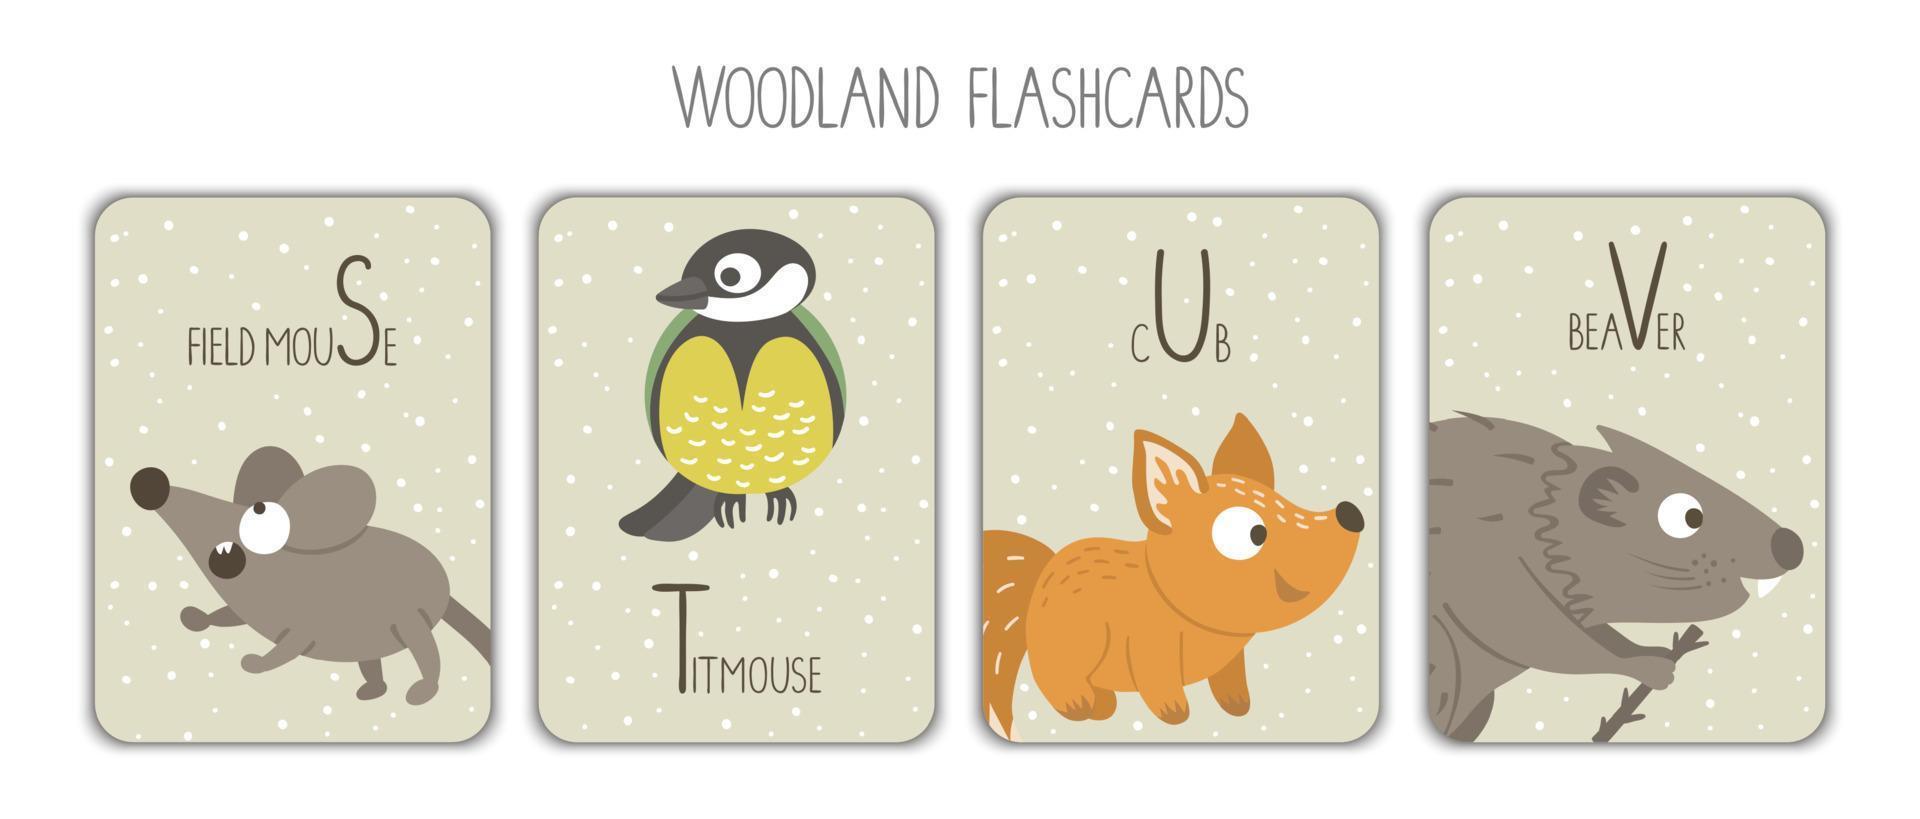 kleurrijk alfabet brieven s, t, jij, v. klanken geheugenkaart. schattig bos- themed abc kaarten voor onderwijs lezing met grappig muis, mees, vos, bever. vector